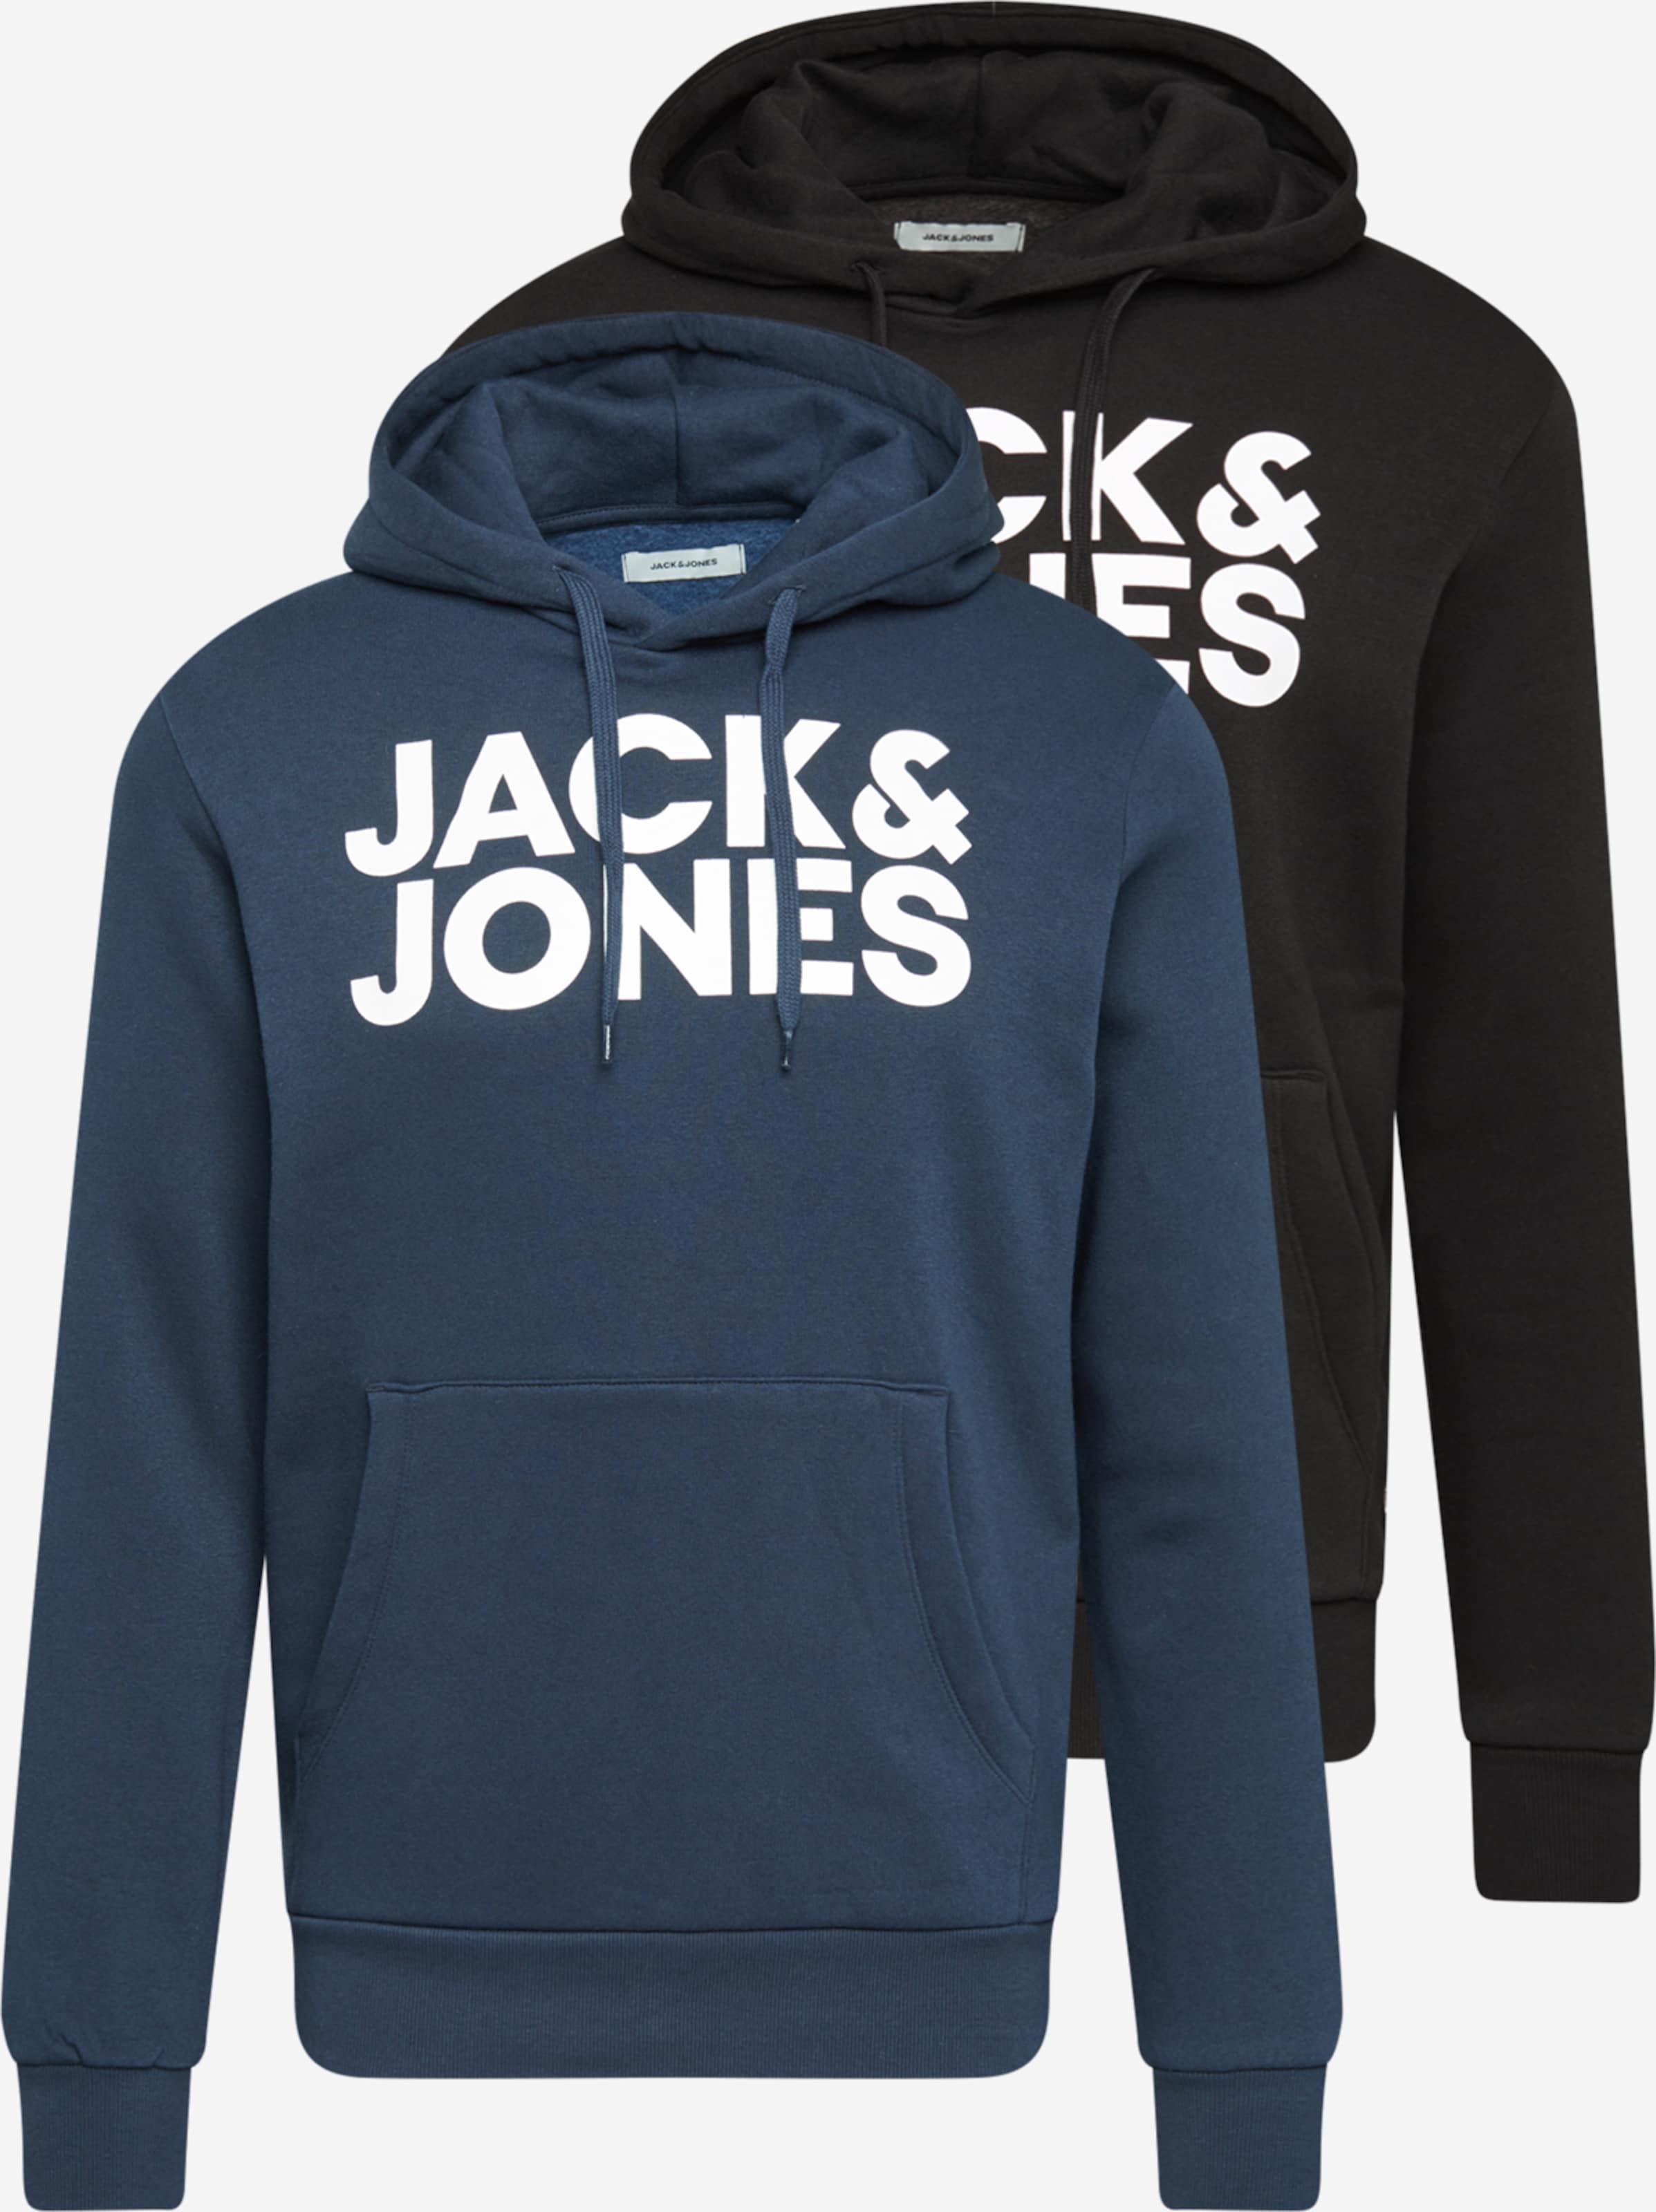 Jack & Jones®